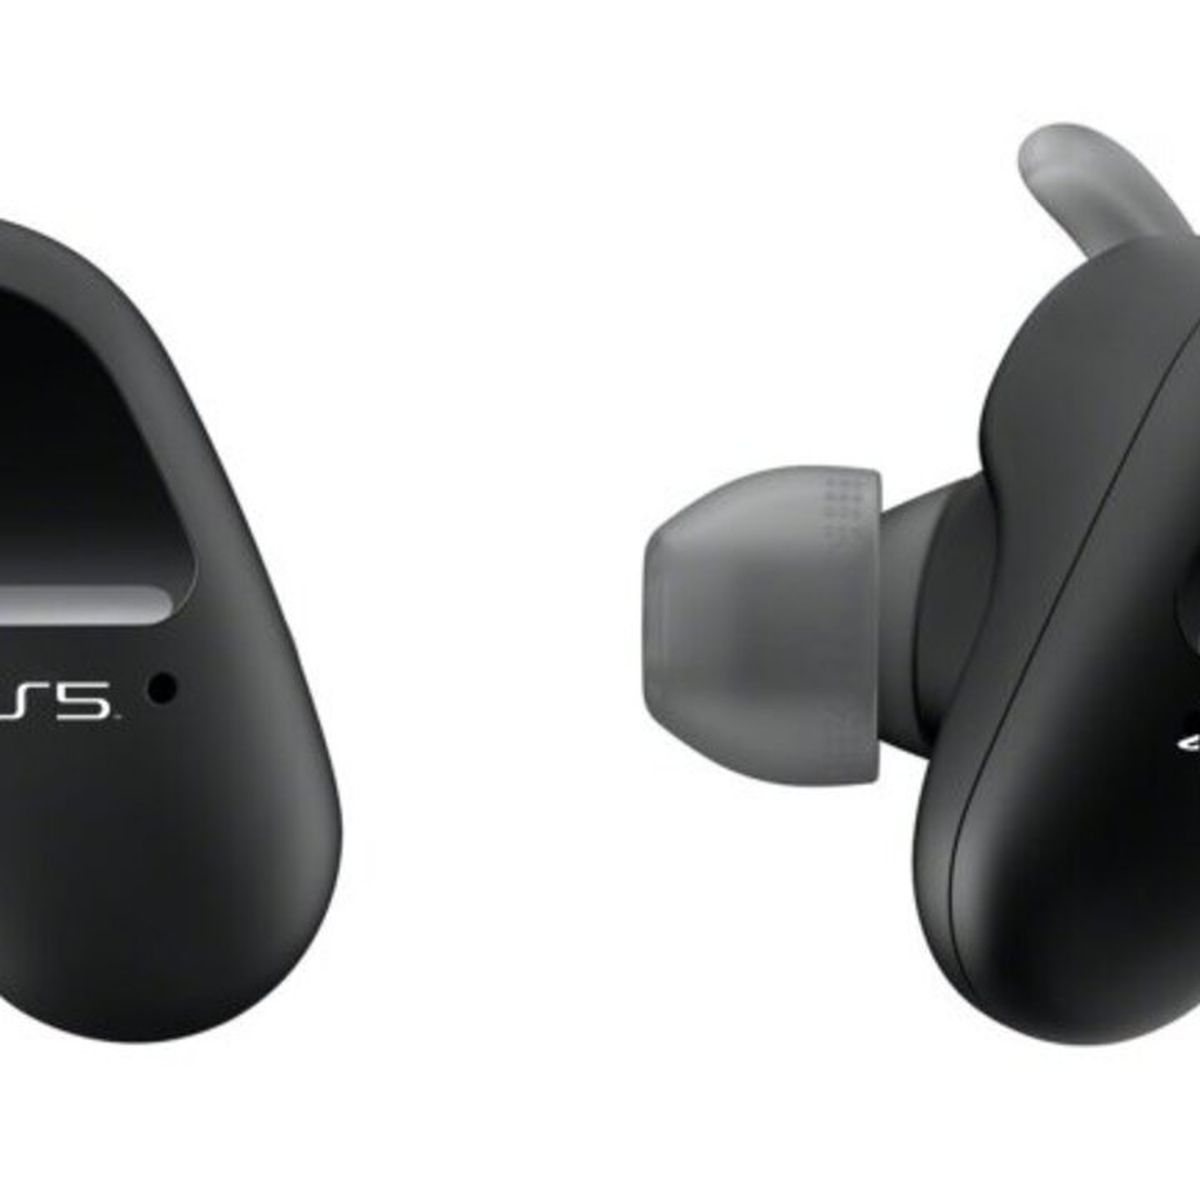 Más pistas sobre la renovación de la consola PlayStation 5: auriculares  inalámbricos y nuevos auriculares para PS5 -  News